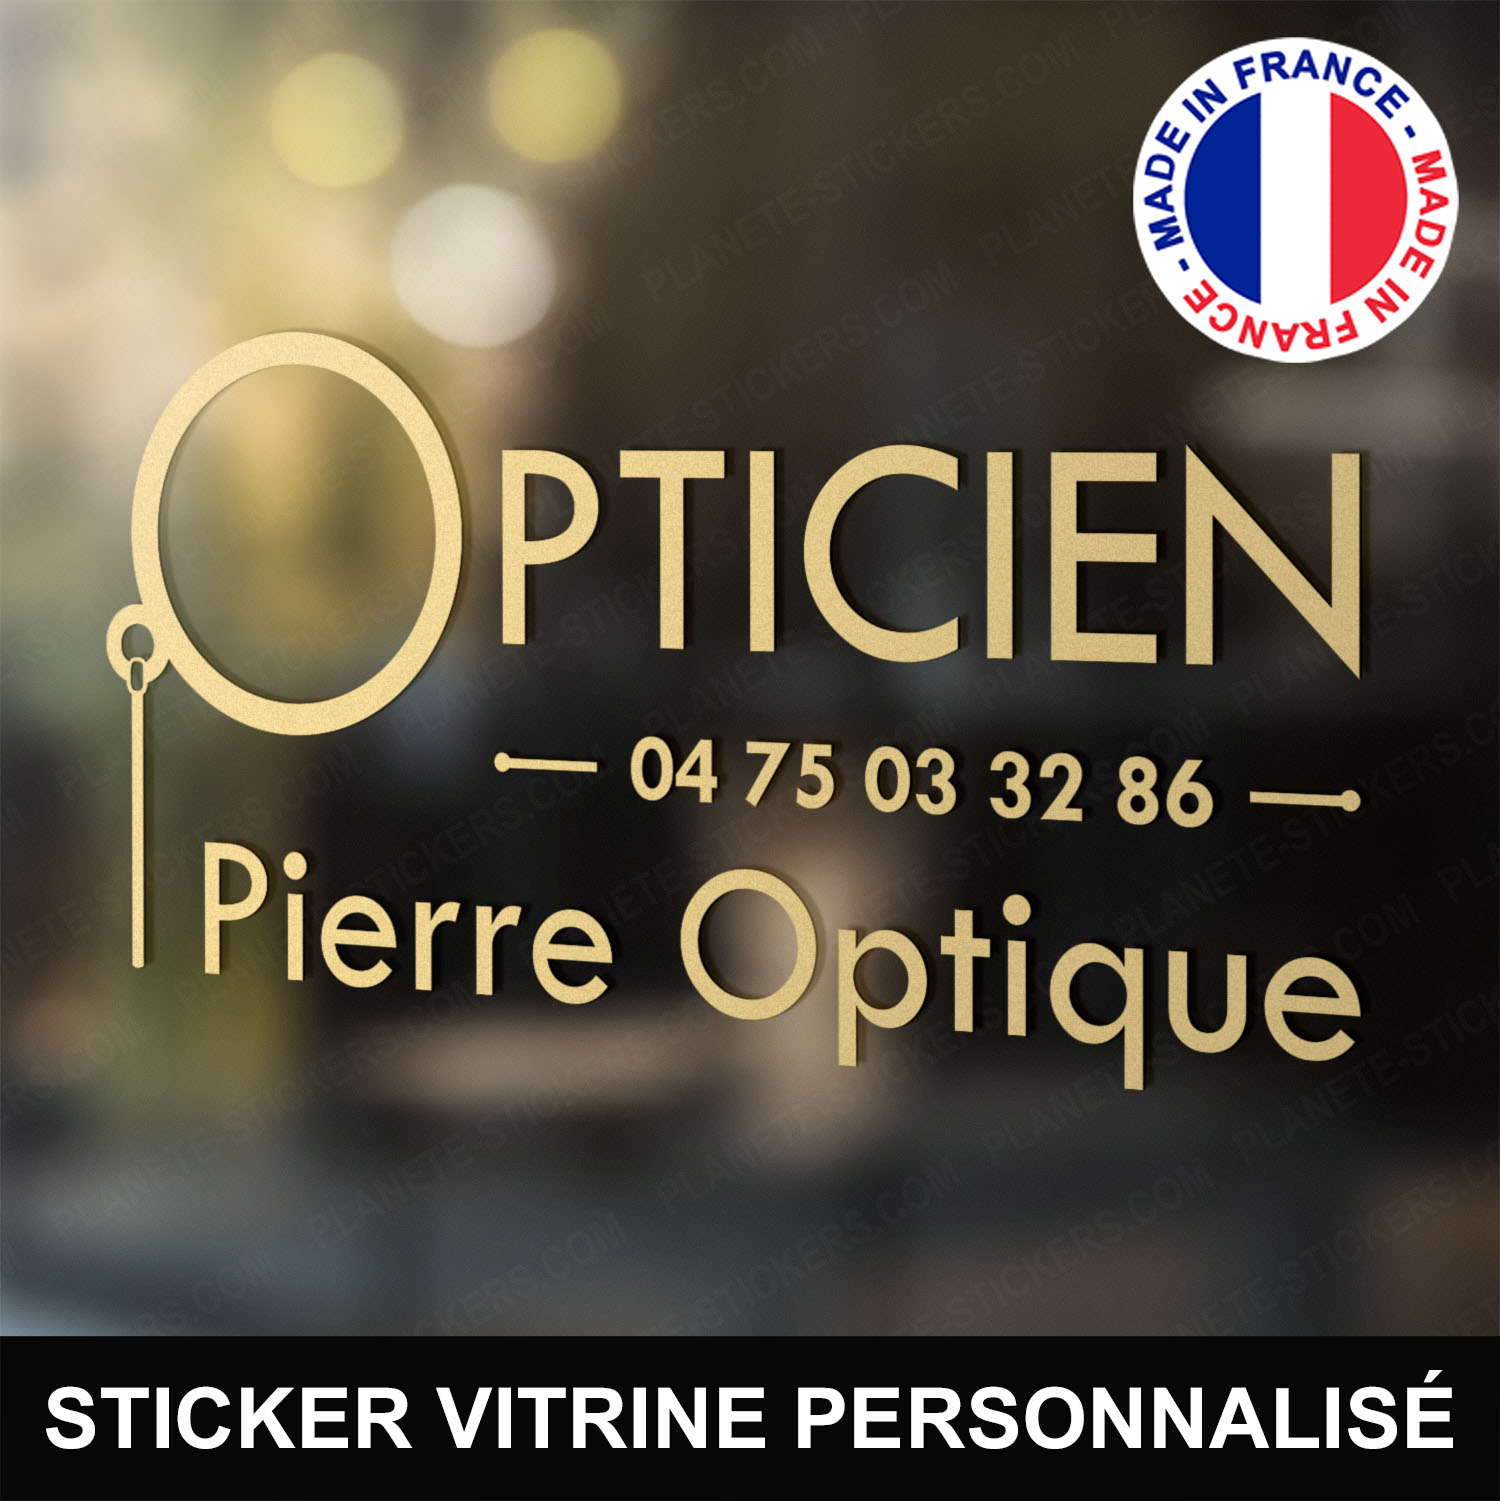 ref12opticienvitrine-stickers-opticien-vitrine-optique-sticker-personnalisé-lunetier-autocollant-pro-opticiens-vitre-magasin-boutique-opticienne-professionnel-logo-lunettes-monocle